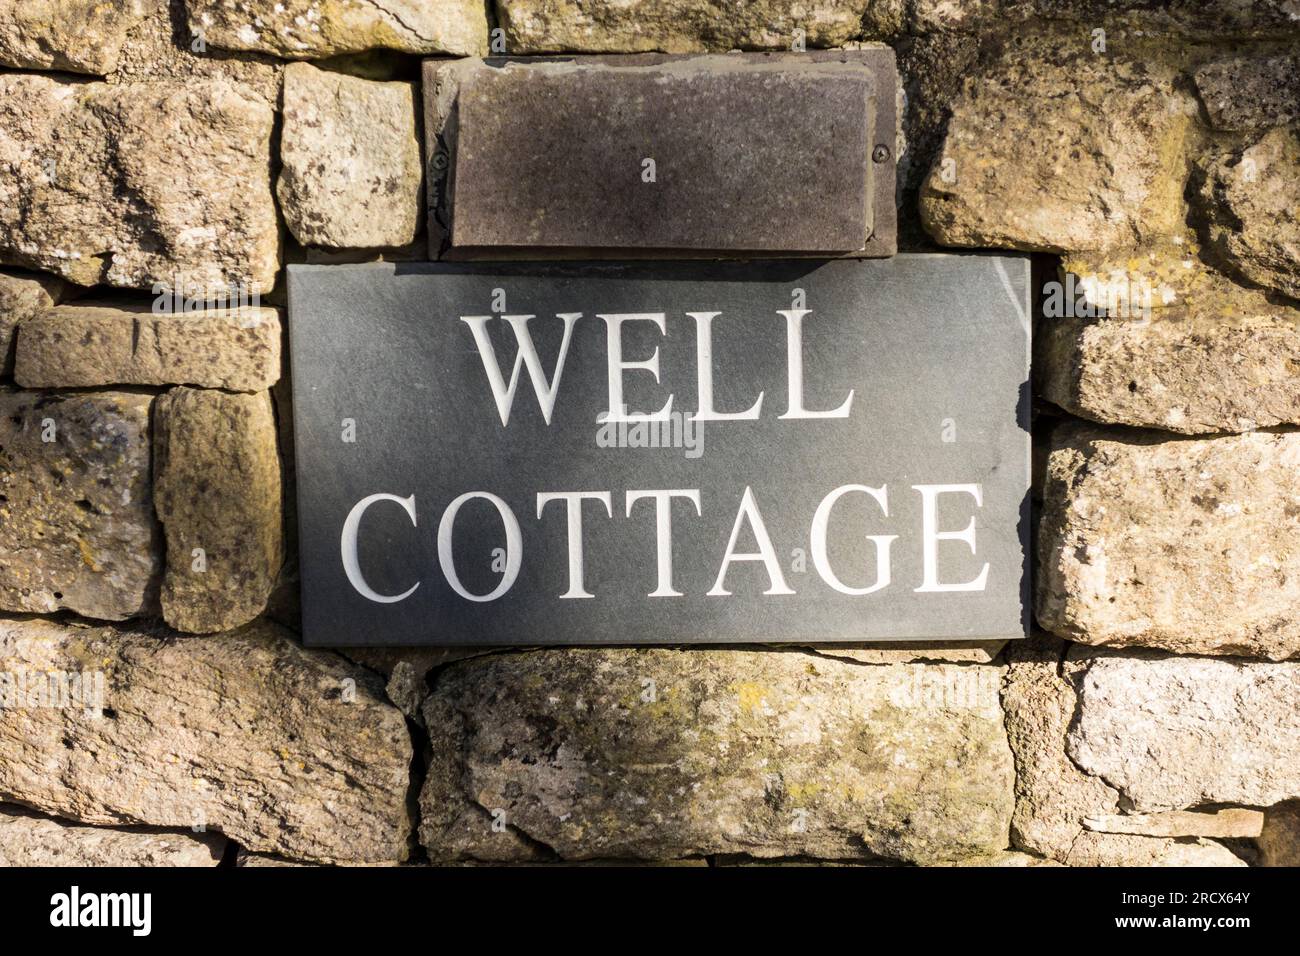 Well Cottage, Gloucestershire, UK Stock Photo